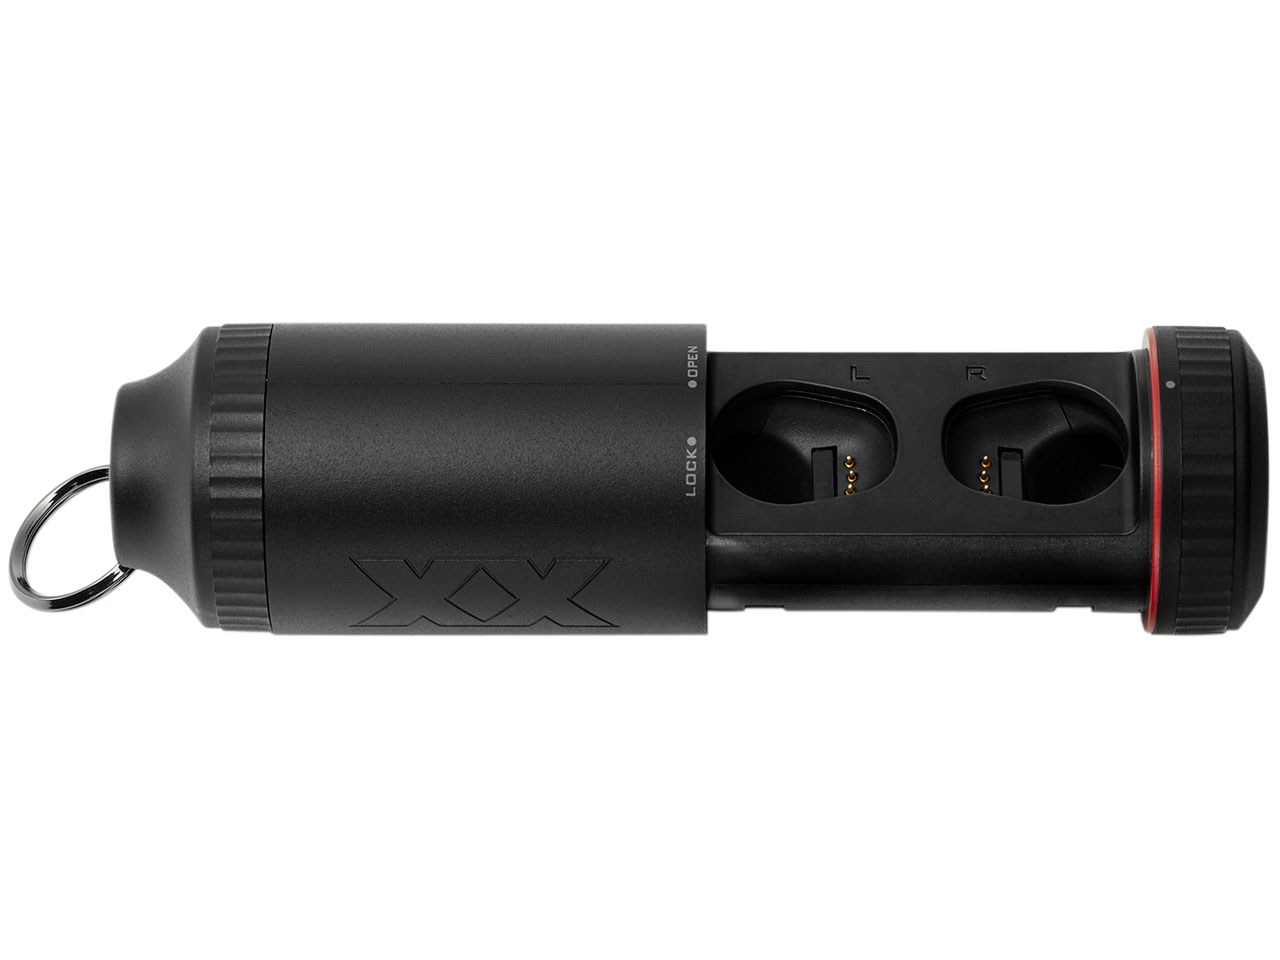 価格.com - 『付属品 充電ケース1』 XX HA-XC70BT-B [ブラック] の製品画像